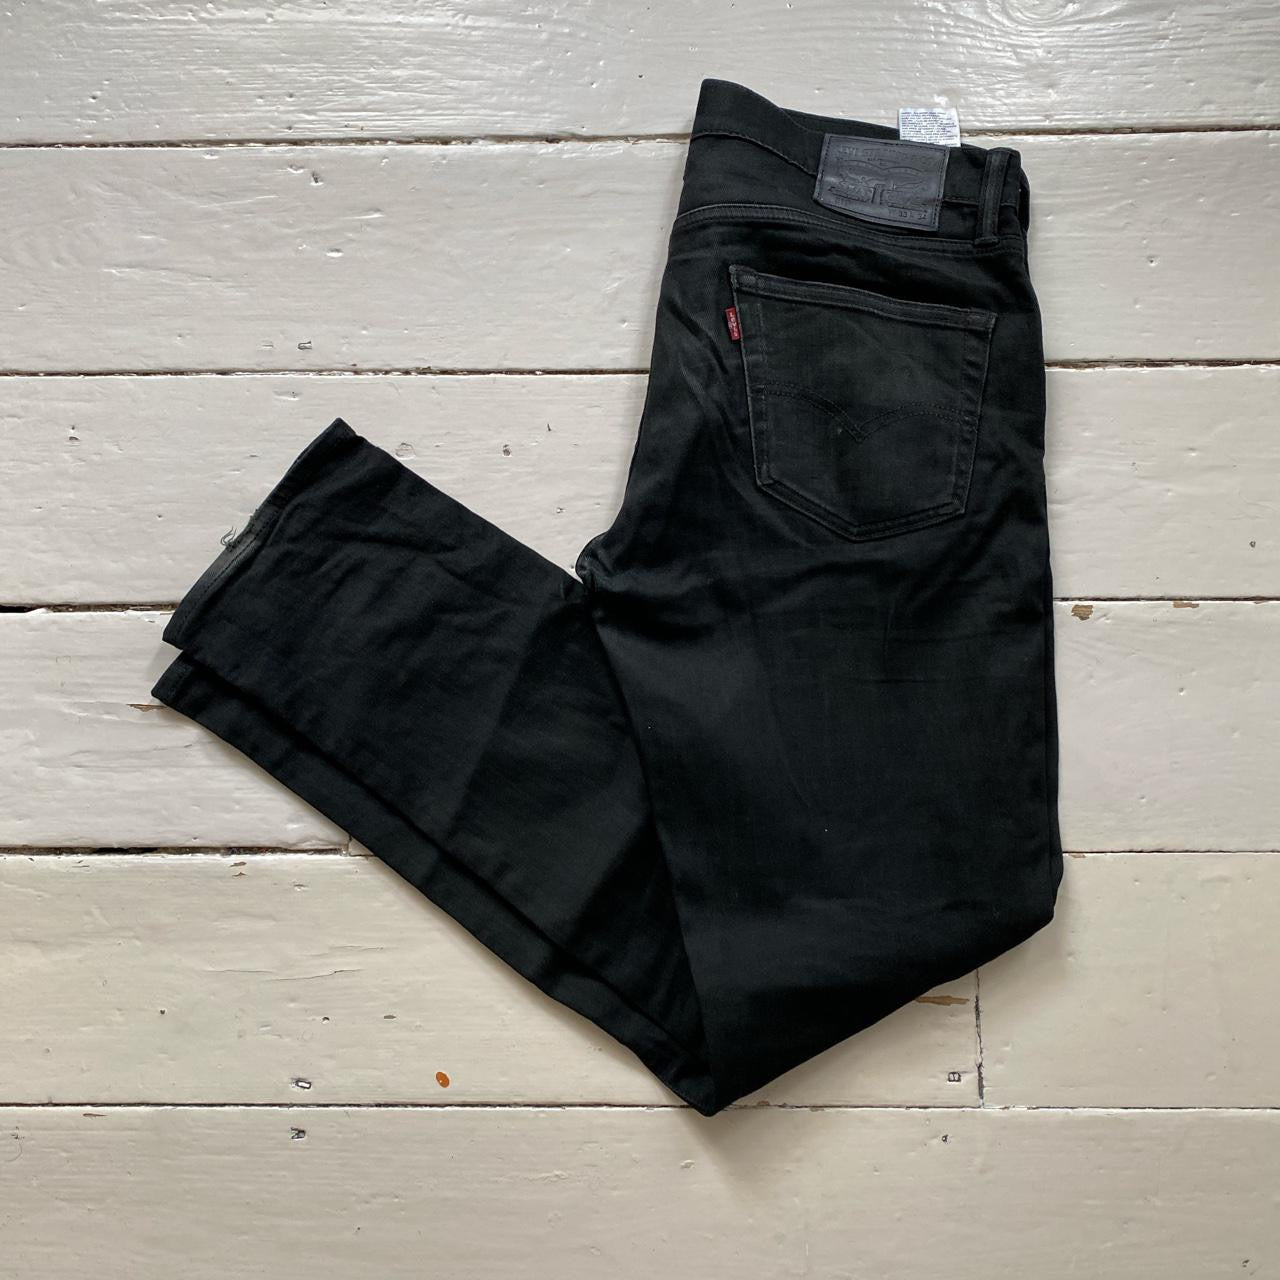 Levis 511 Black Slim Fit Jeans (33/32)